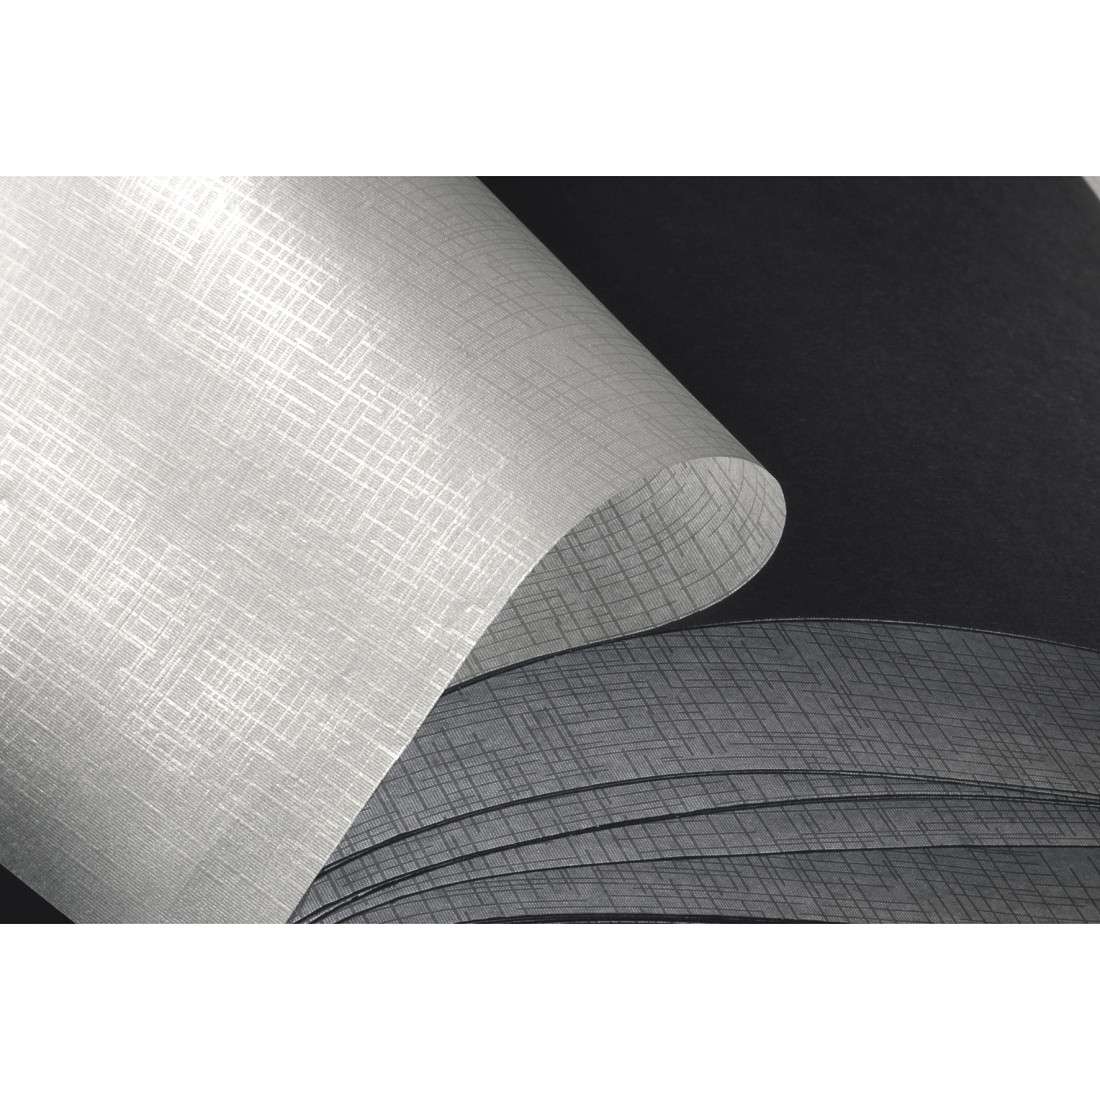 Spiral-Album Fine Art, 36x32 cm, 50 schwarze Seiten, Pink